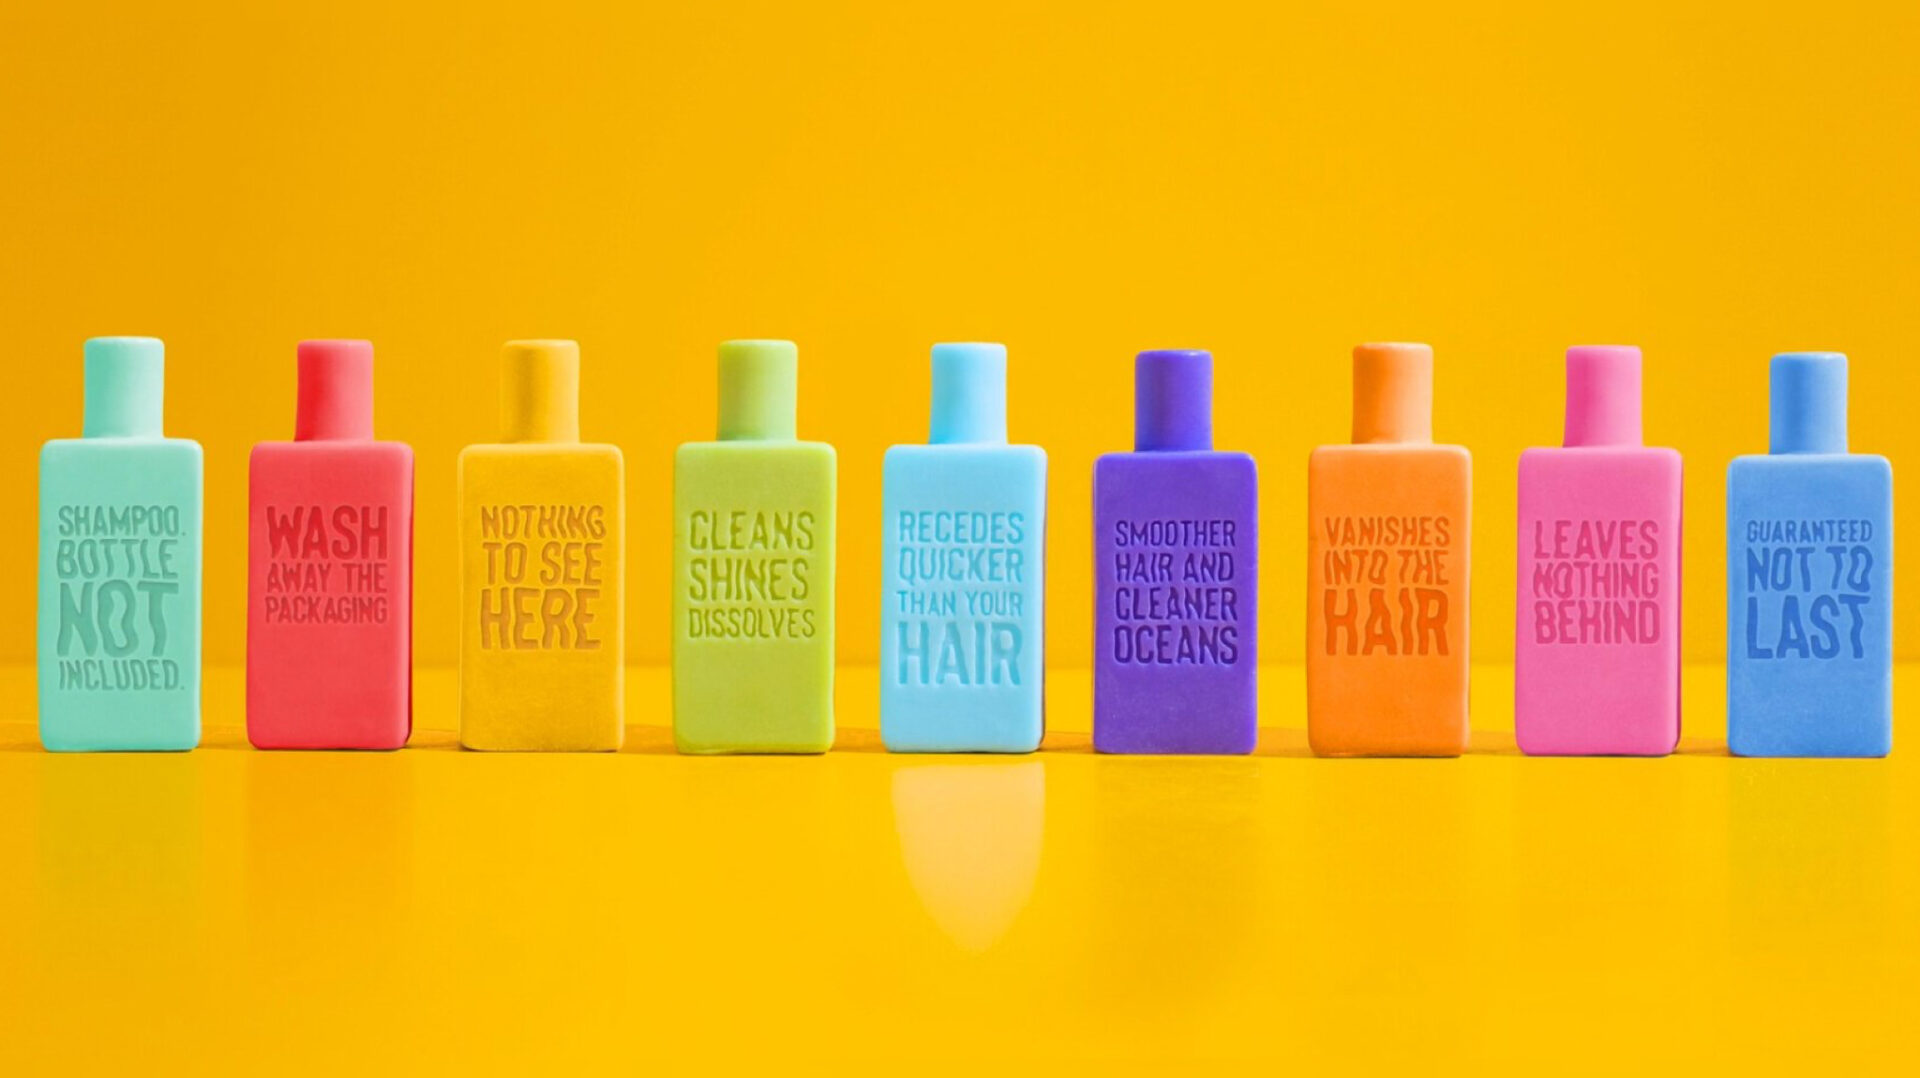 Garrafas dissolúveis transformam o mercado de shampoo sustentável